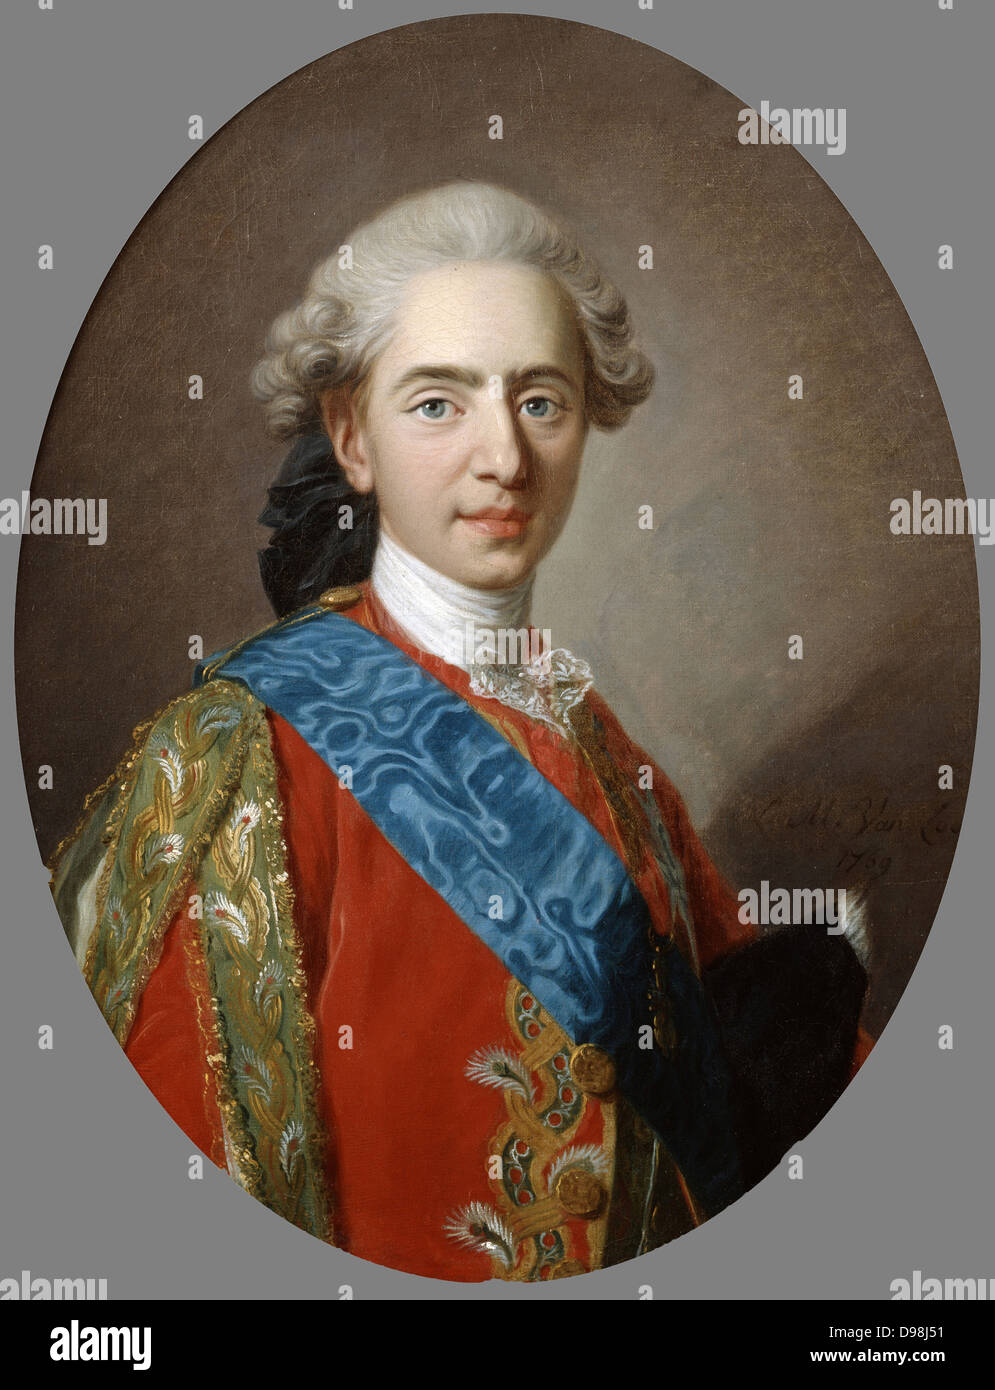 Louis XVI (1754-1793), König von Frankreich von 1774 bis während der Französischen Revolution die Guillotine hingerichtet. Louis während noch Dauphin. Porträt von Charles Andre van Loo (1705-1765), französischer Maler. Öl auf Leinwand. Stockfoto